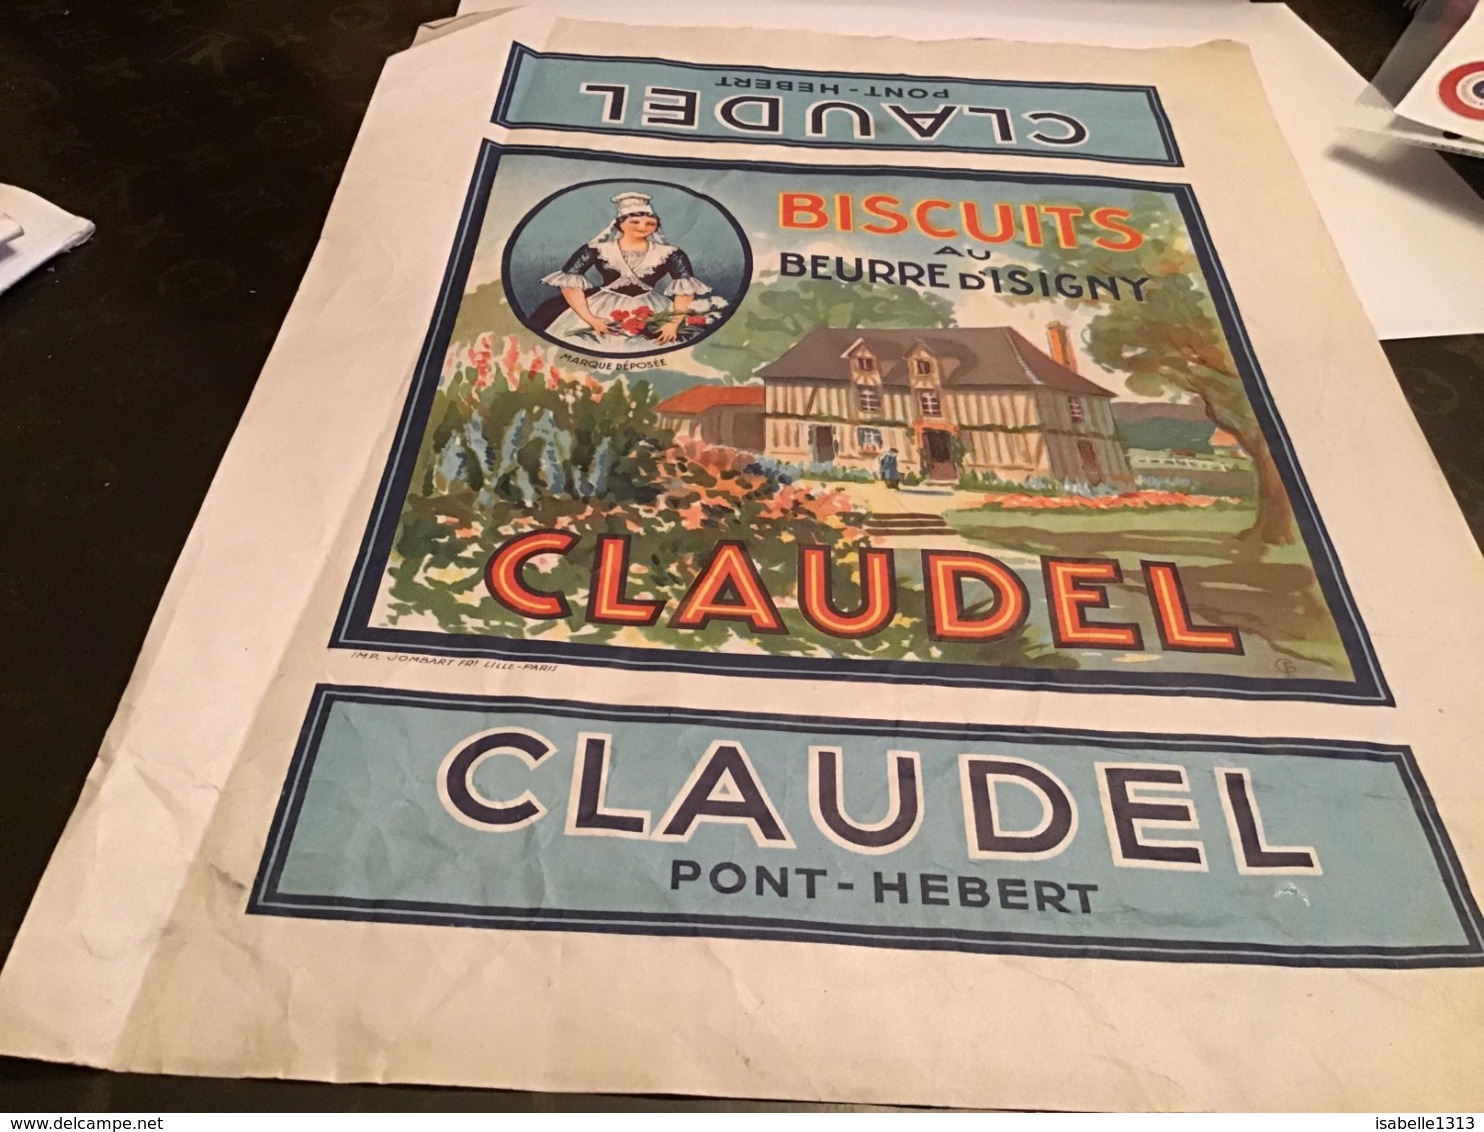 Grande Publicité Biscuits Au Beurre D Isigny Claudel Pont Hebert - Werbung